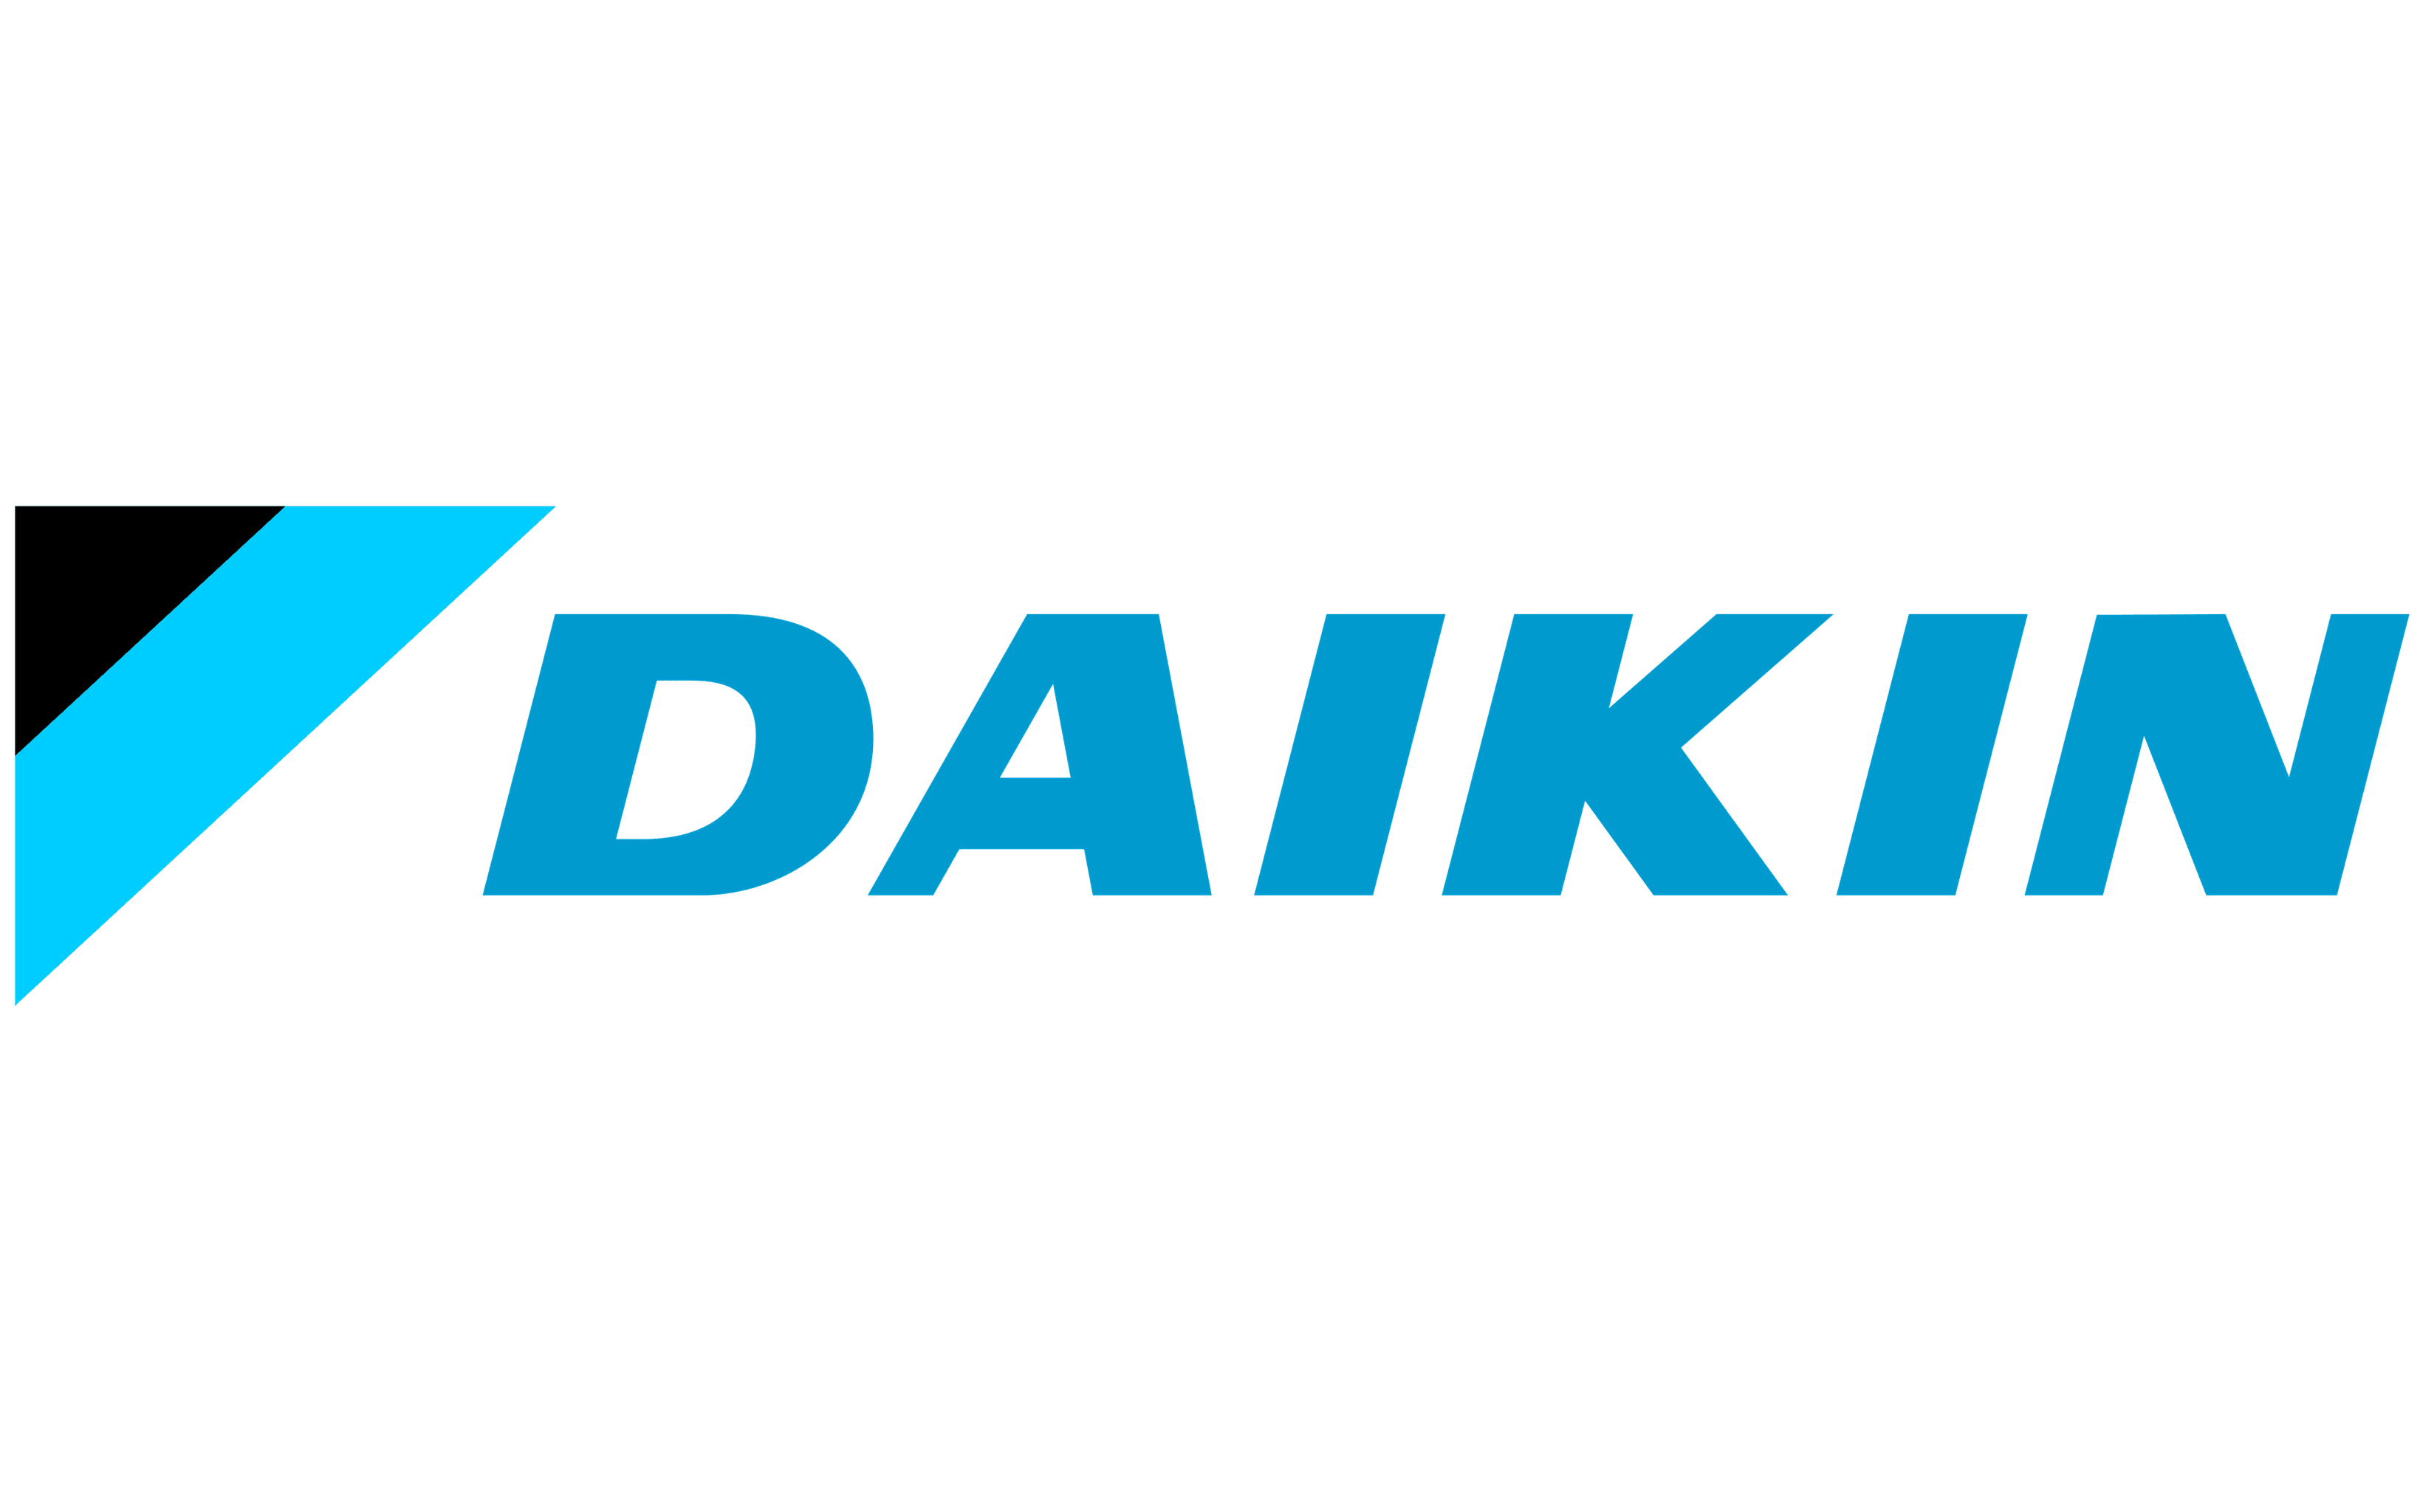 Daiki